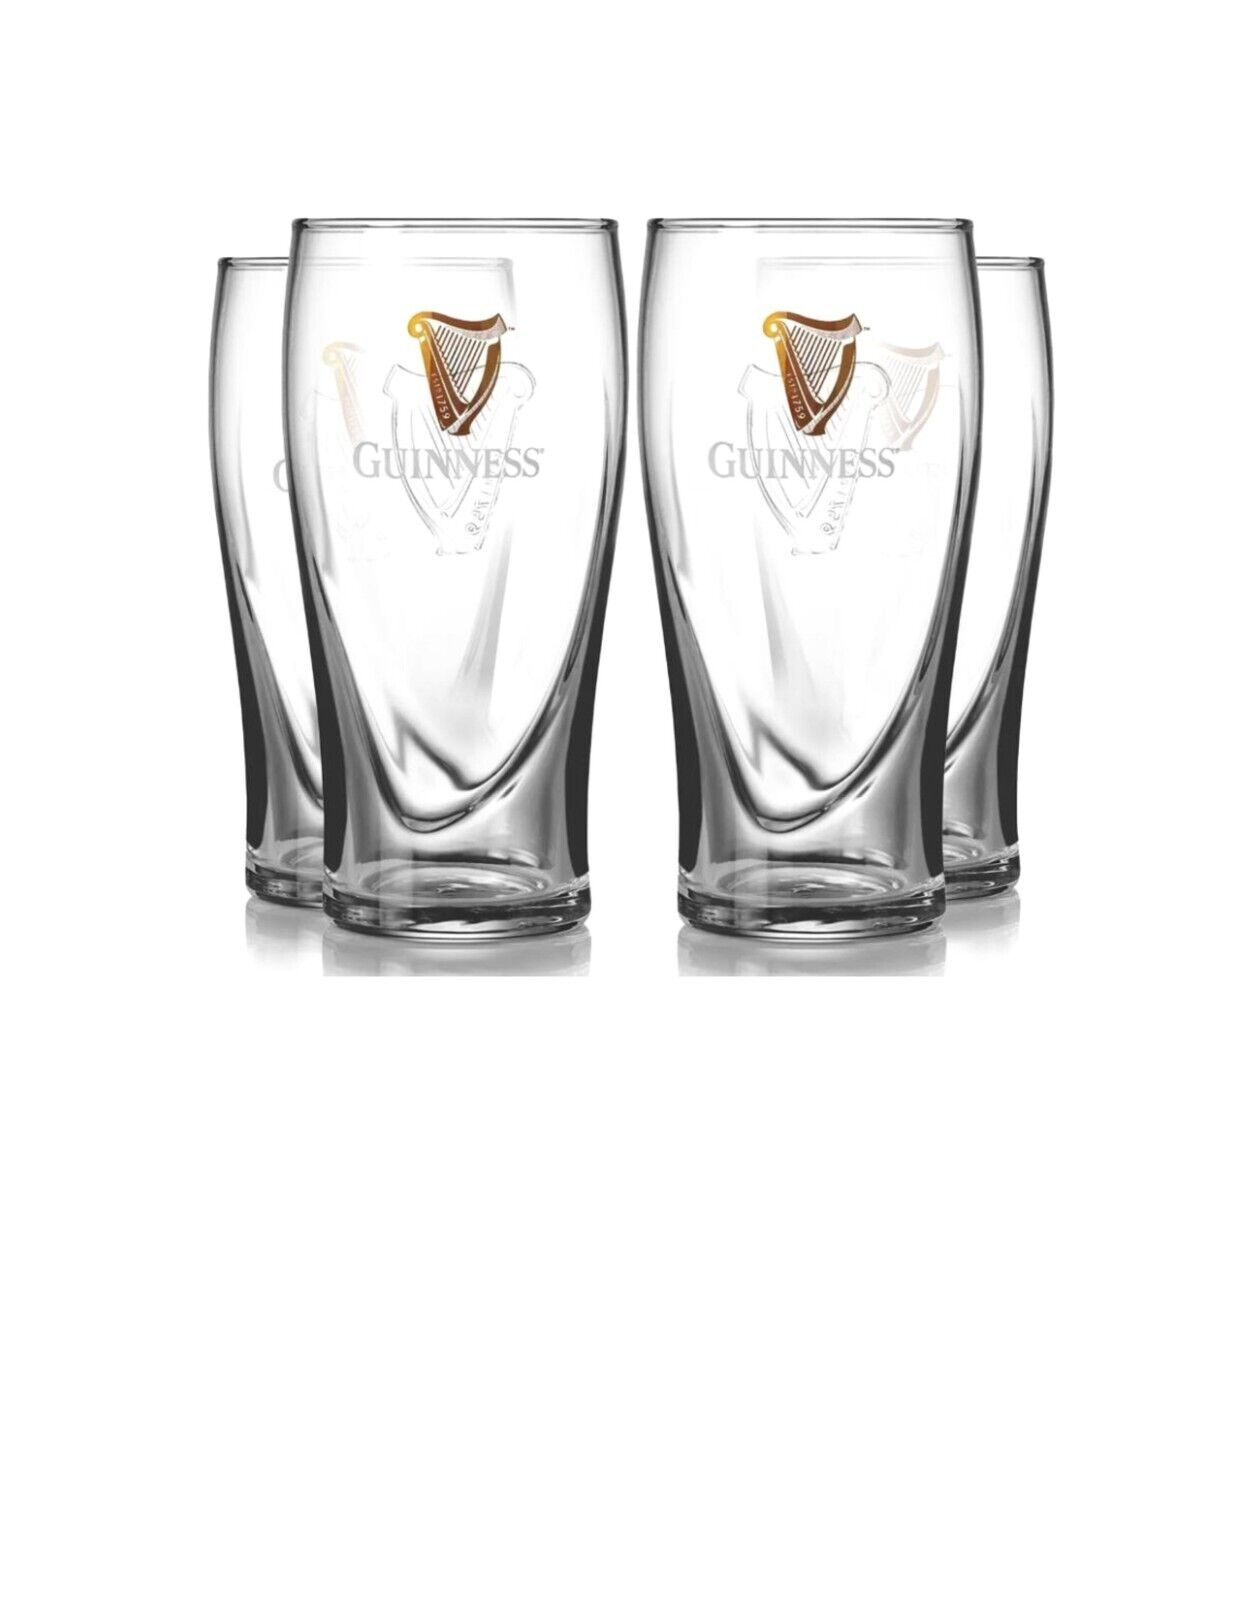 Guinness 20oz Gravity Glasses - (Pack of 4 Glasses)